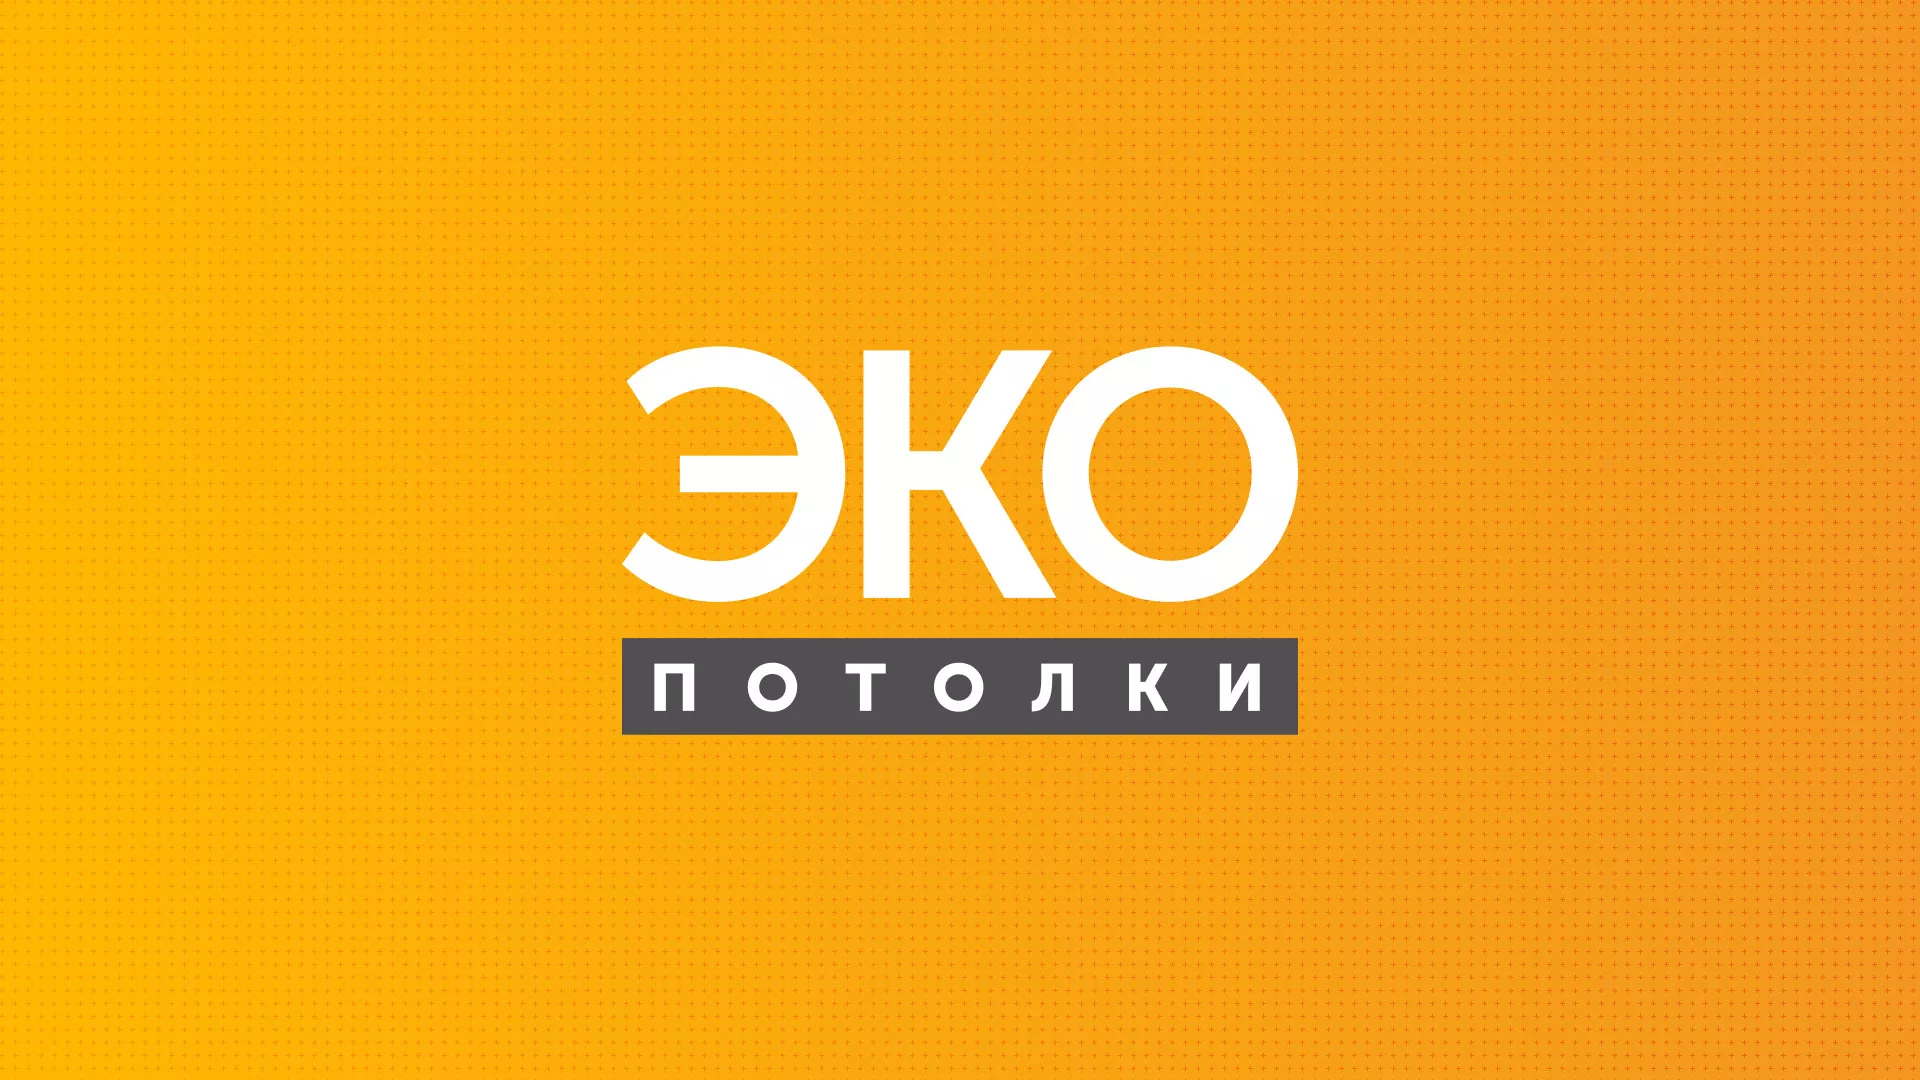 Разработка сайта по натяжным потолкам «Эко Потолки» в Екатеринбурге